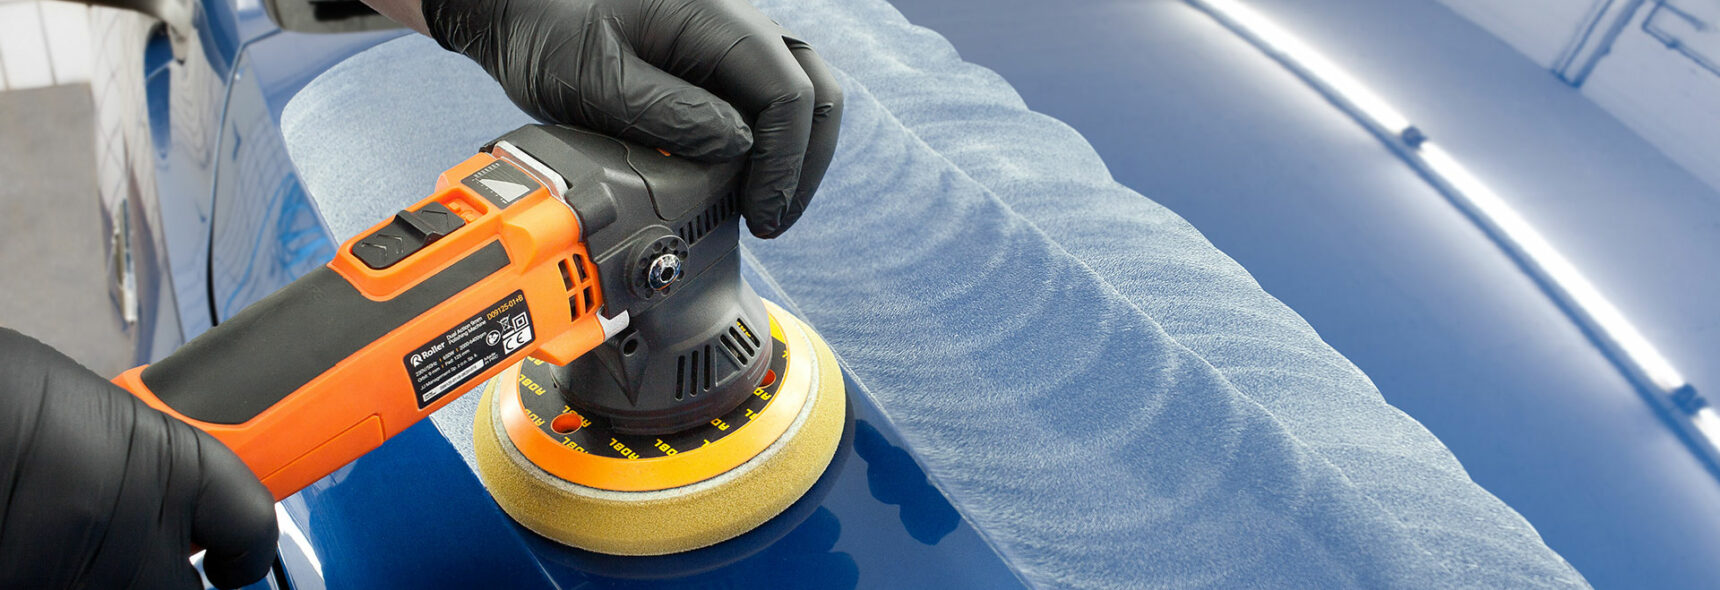 Eine Person poliert einen blauen Lack mit einer orangenen Poliermaschine.